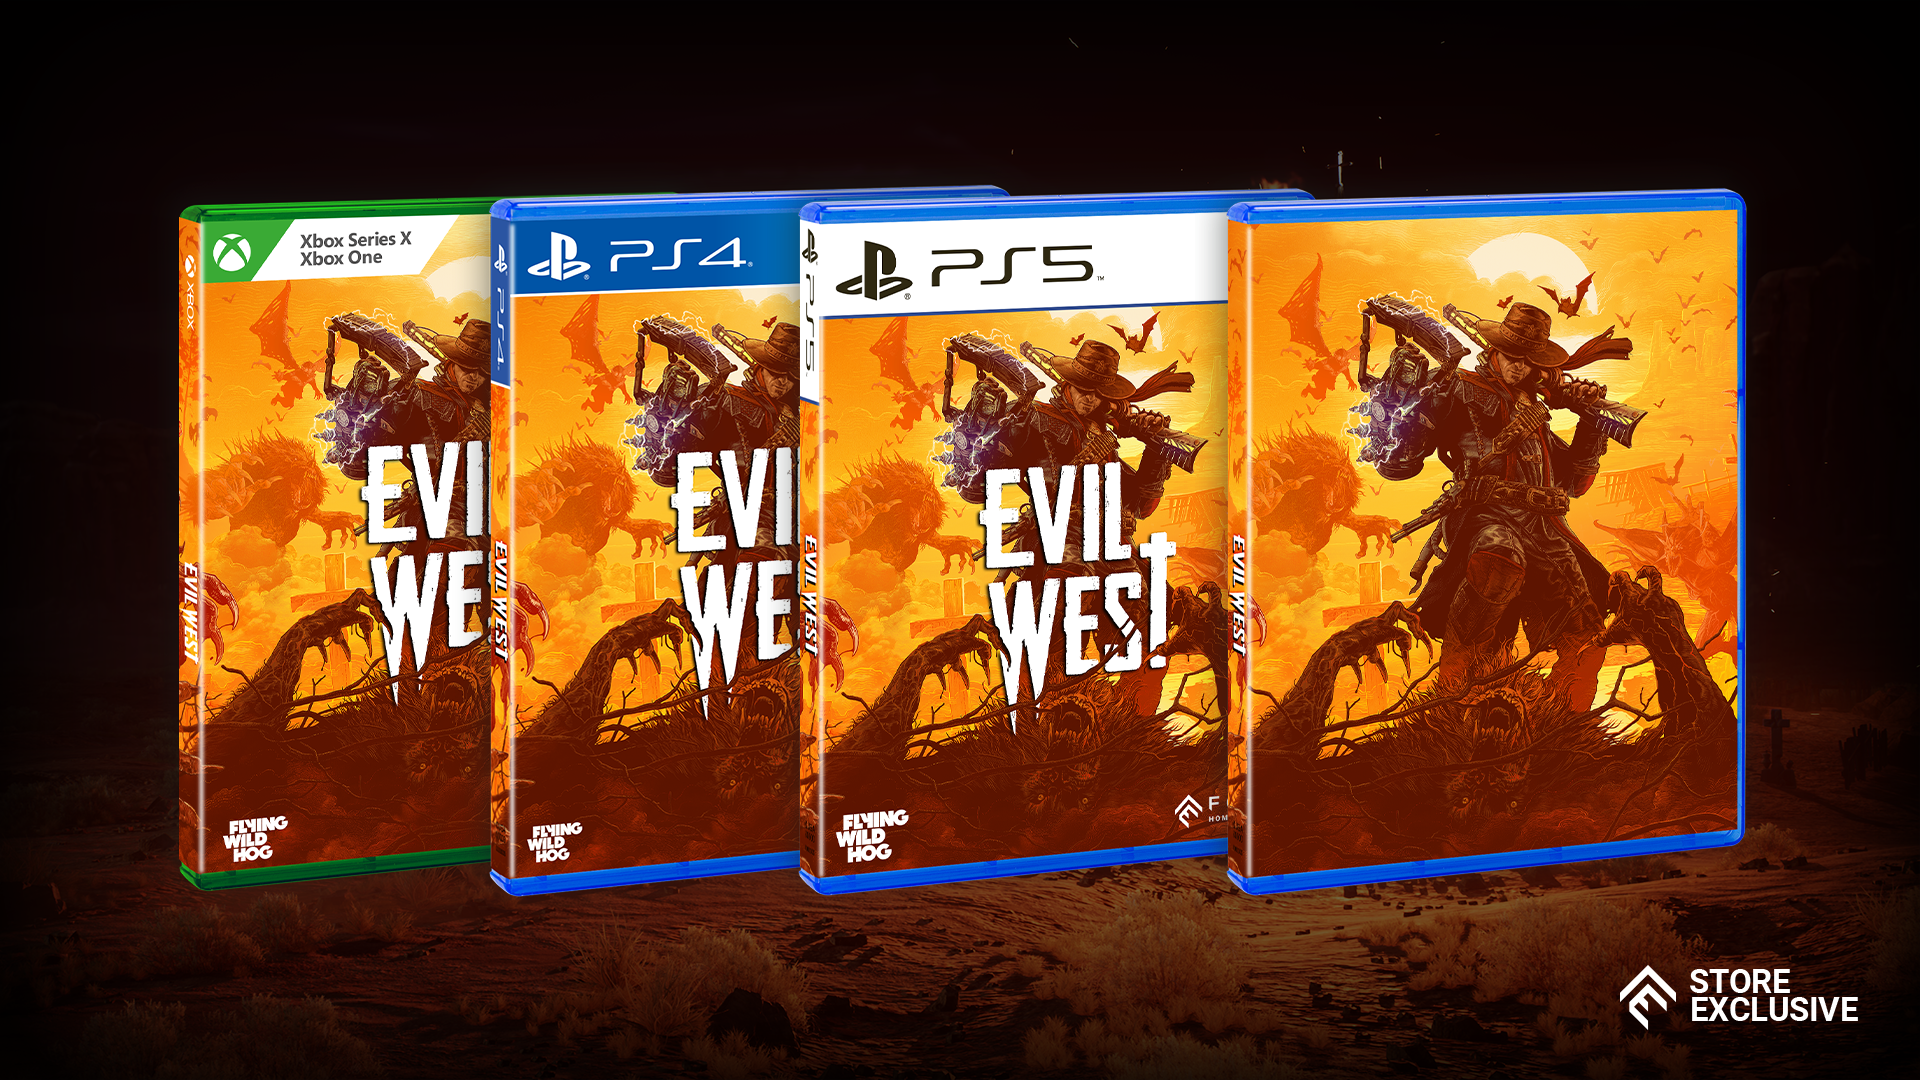 Evil West  Focus Entertainment Store